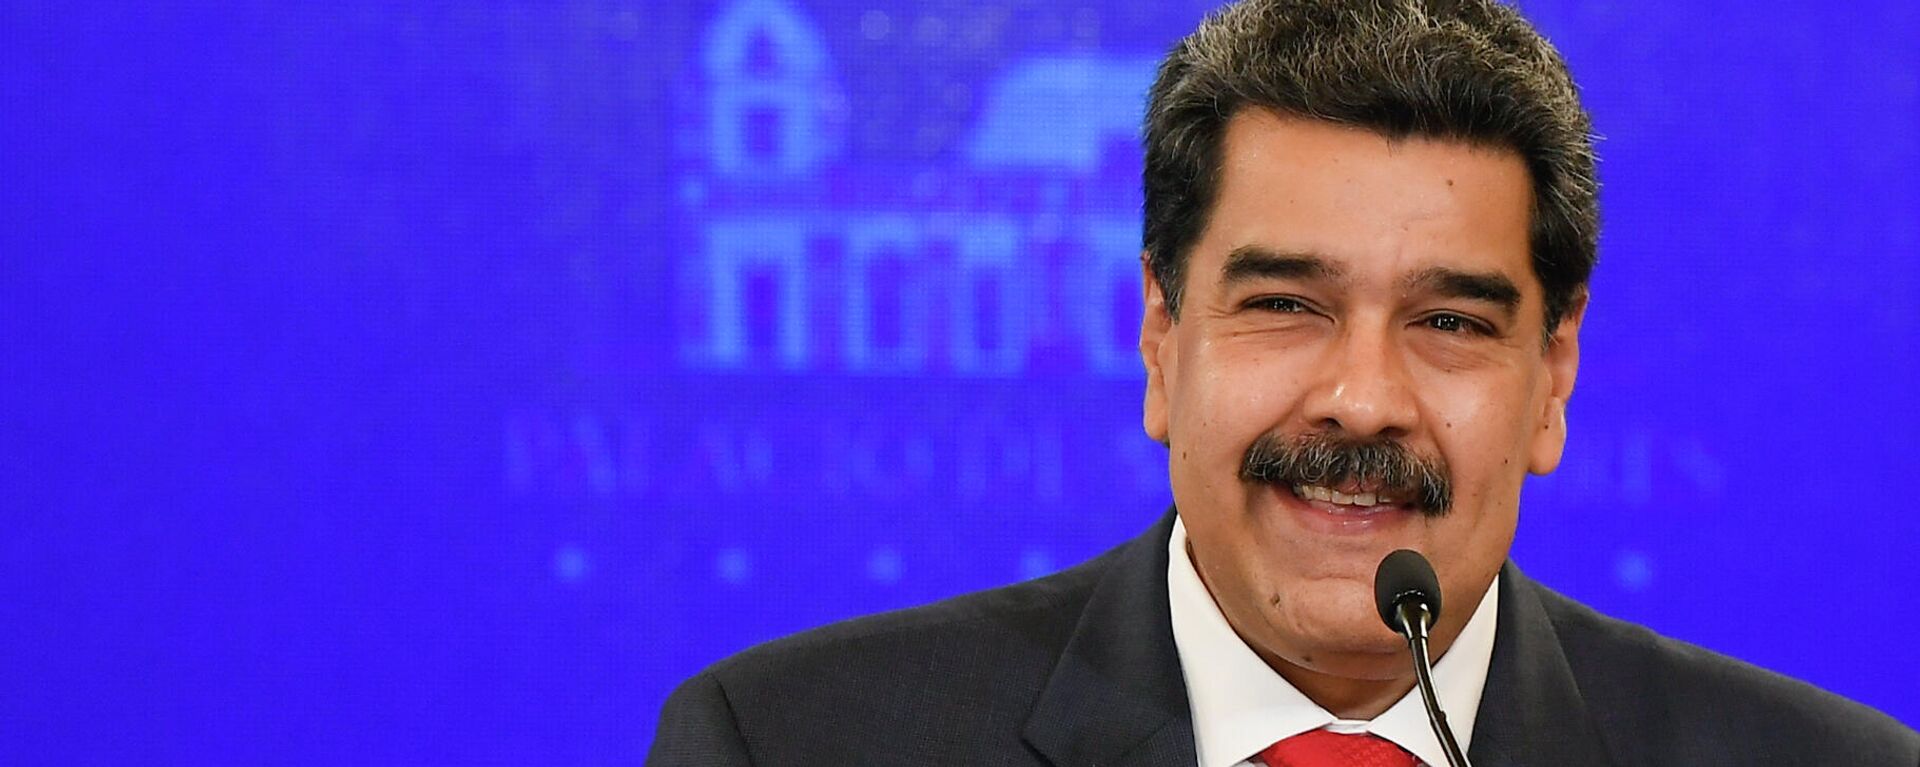 Nicolás Maduro, presidente de Venezuela - Sputnik Mundo, 1920, 18.04.2021